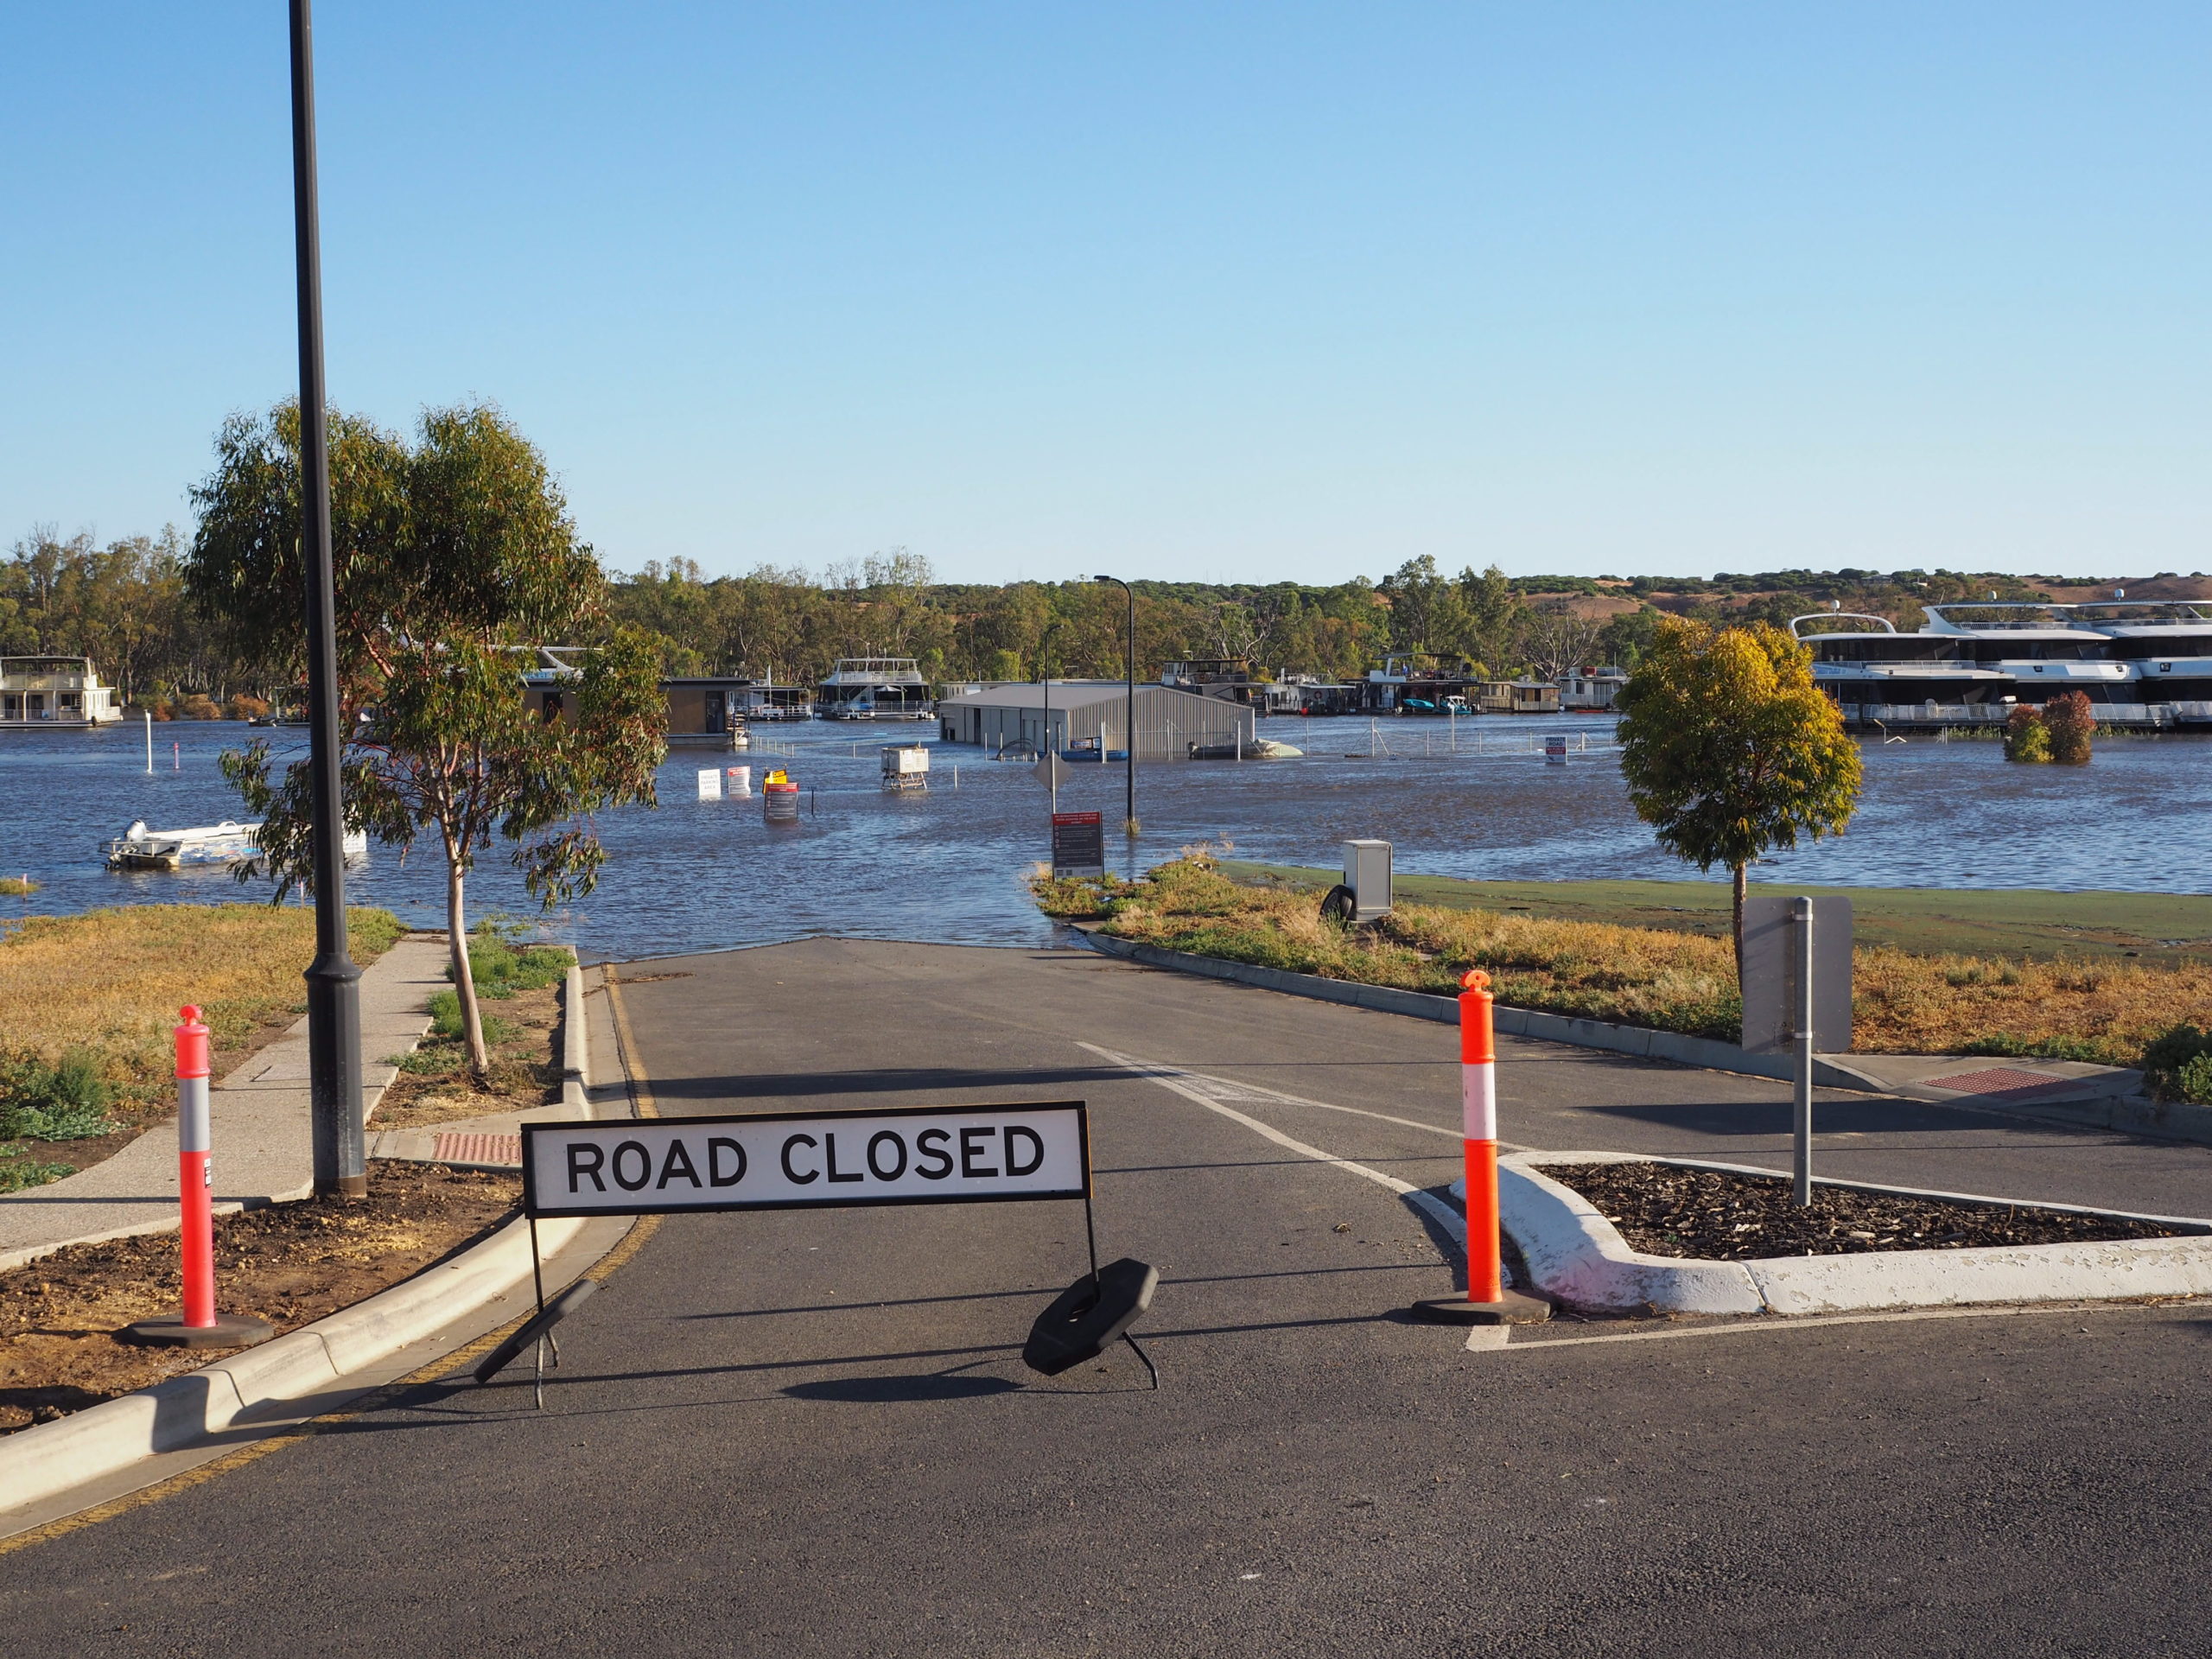 Αυστραλία: Aποκλεισμοί κοινοτήτων από πλημμύρες στο βορειοδυτικό τμήμα της χώρας